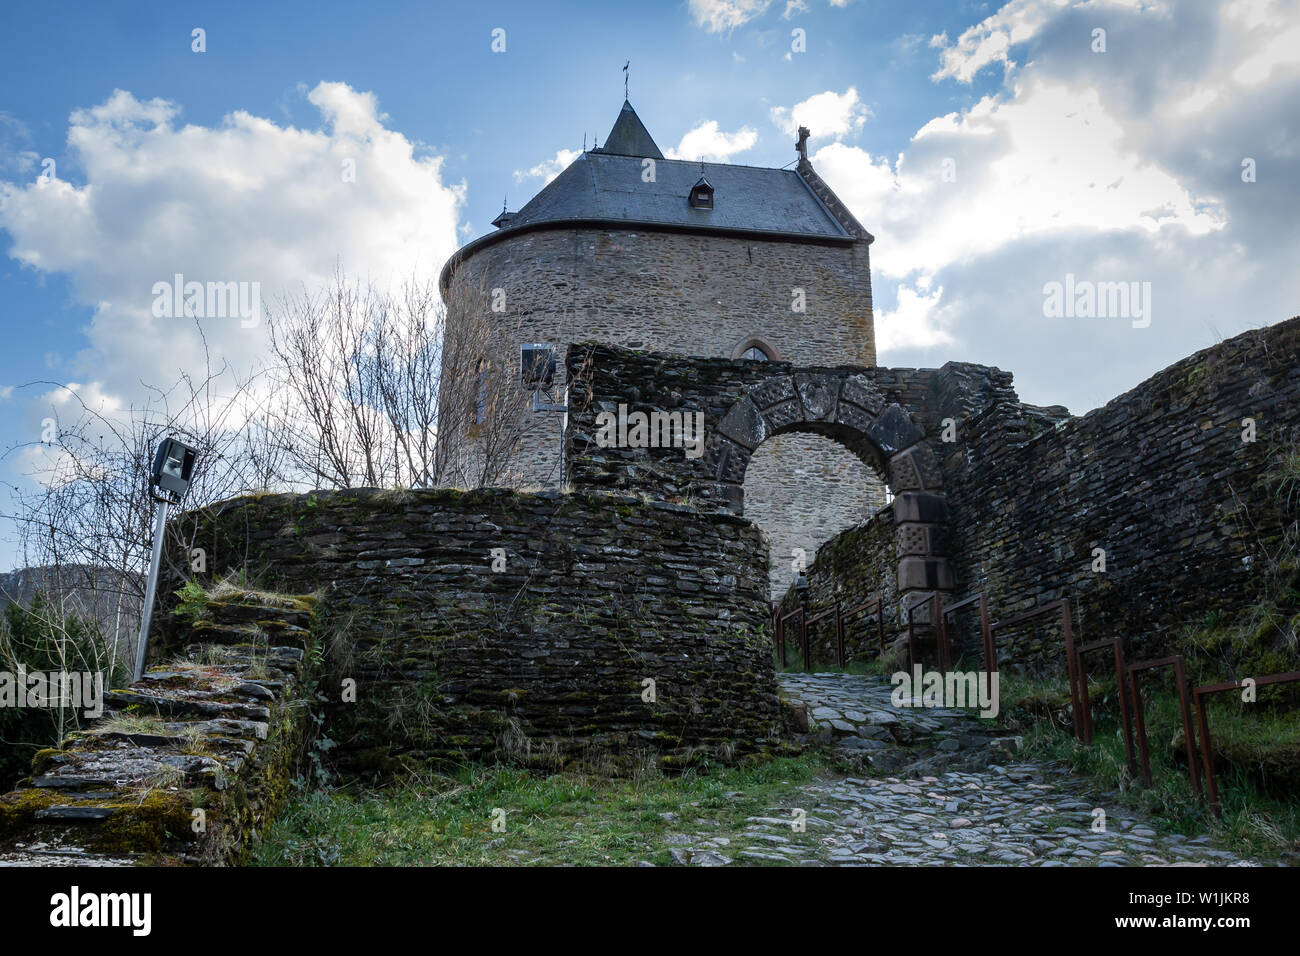 Vieux château et fortifications à Esch-sur-Sûre, Luxembourg Banque D'Images